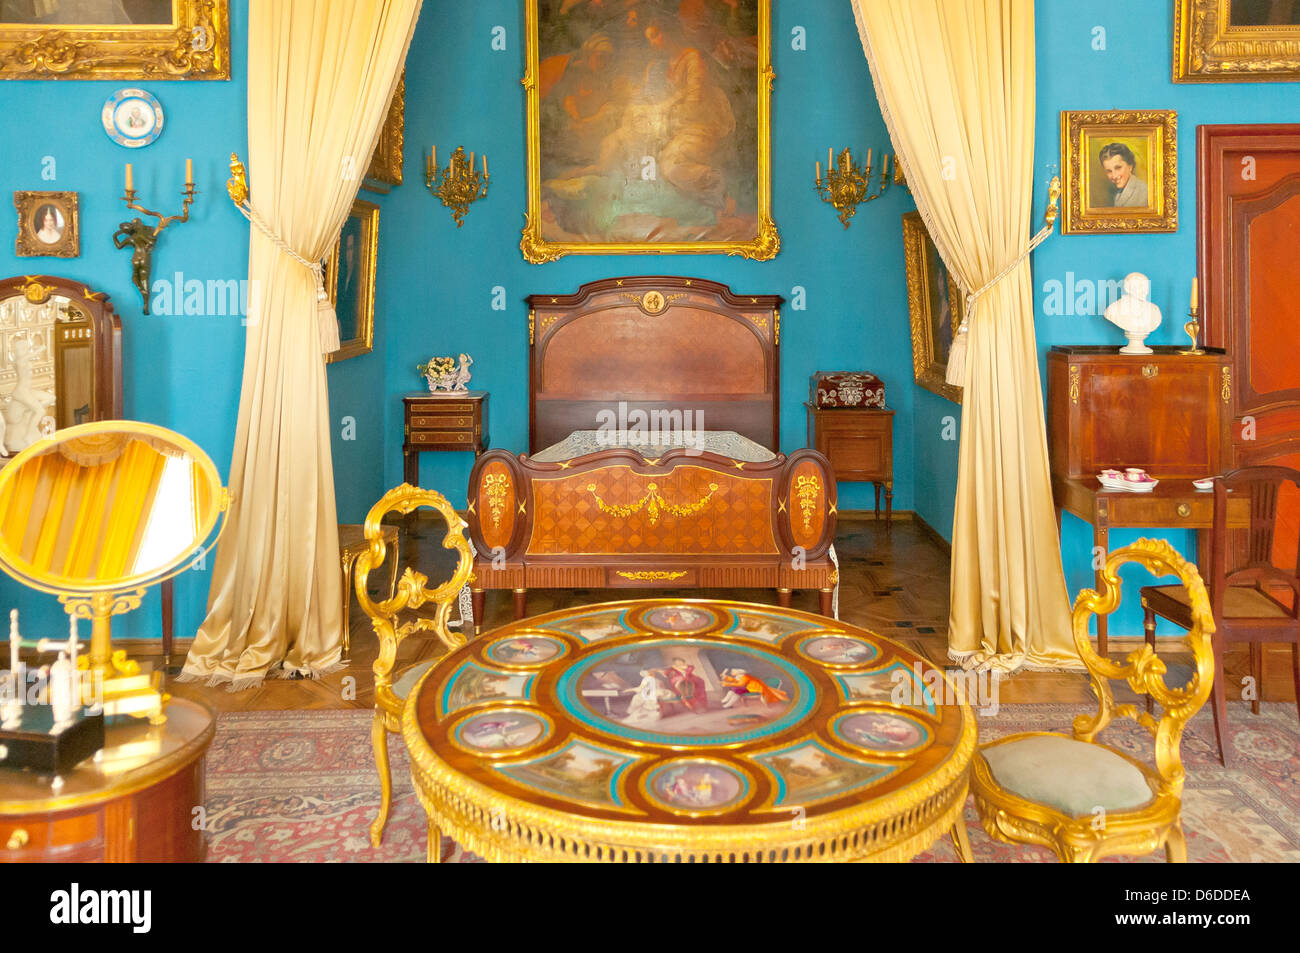 Countess's Bedroom, Kozlowka Palace, Kozlowka, Poland Stock Photo